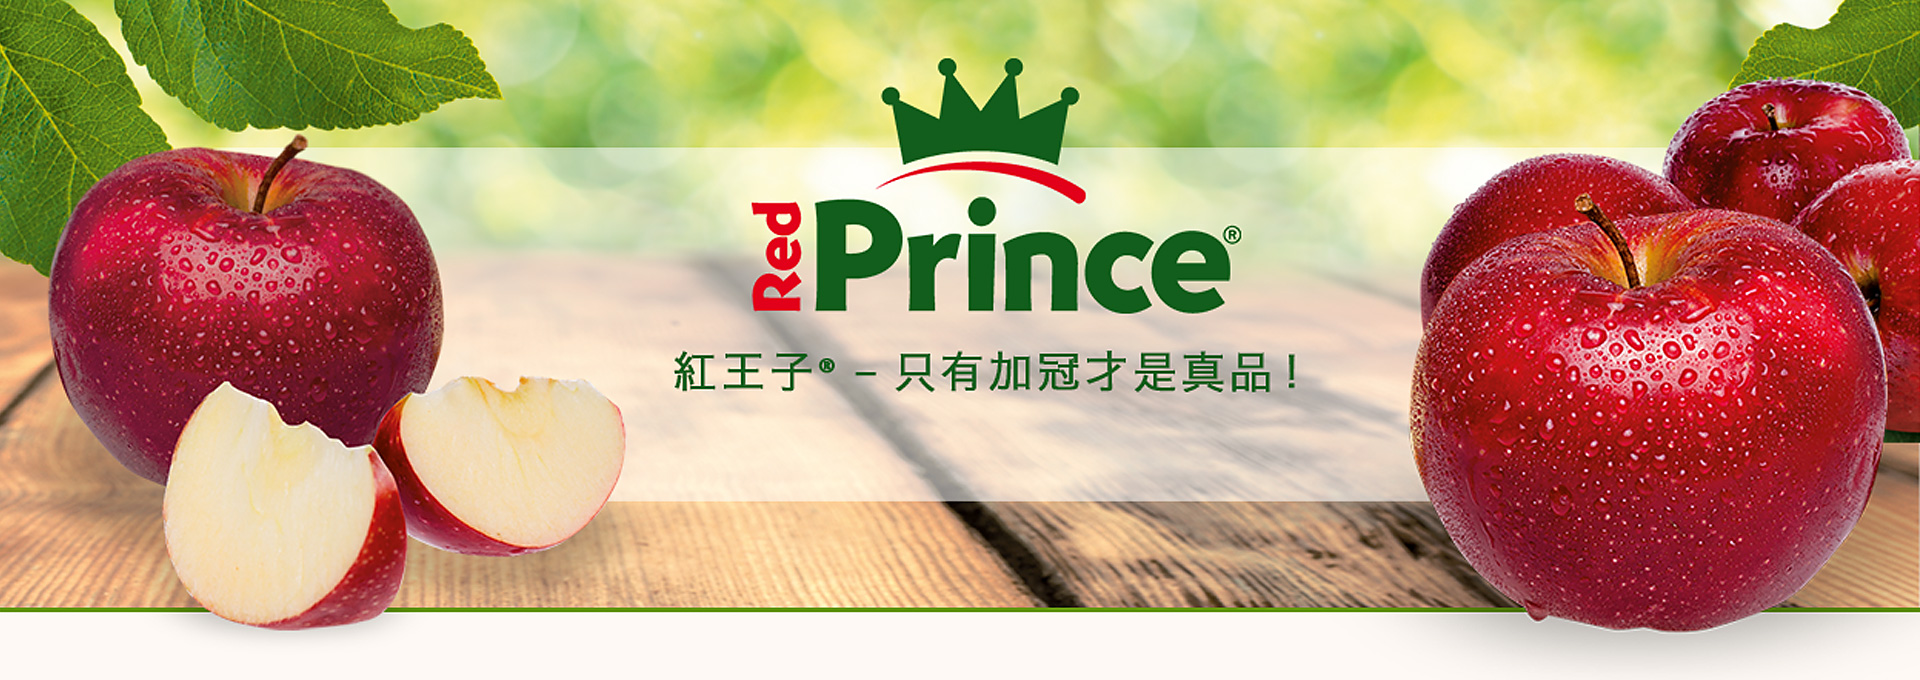 Red Prince® (紅王子) 不同於一般蘋果